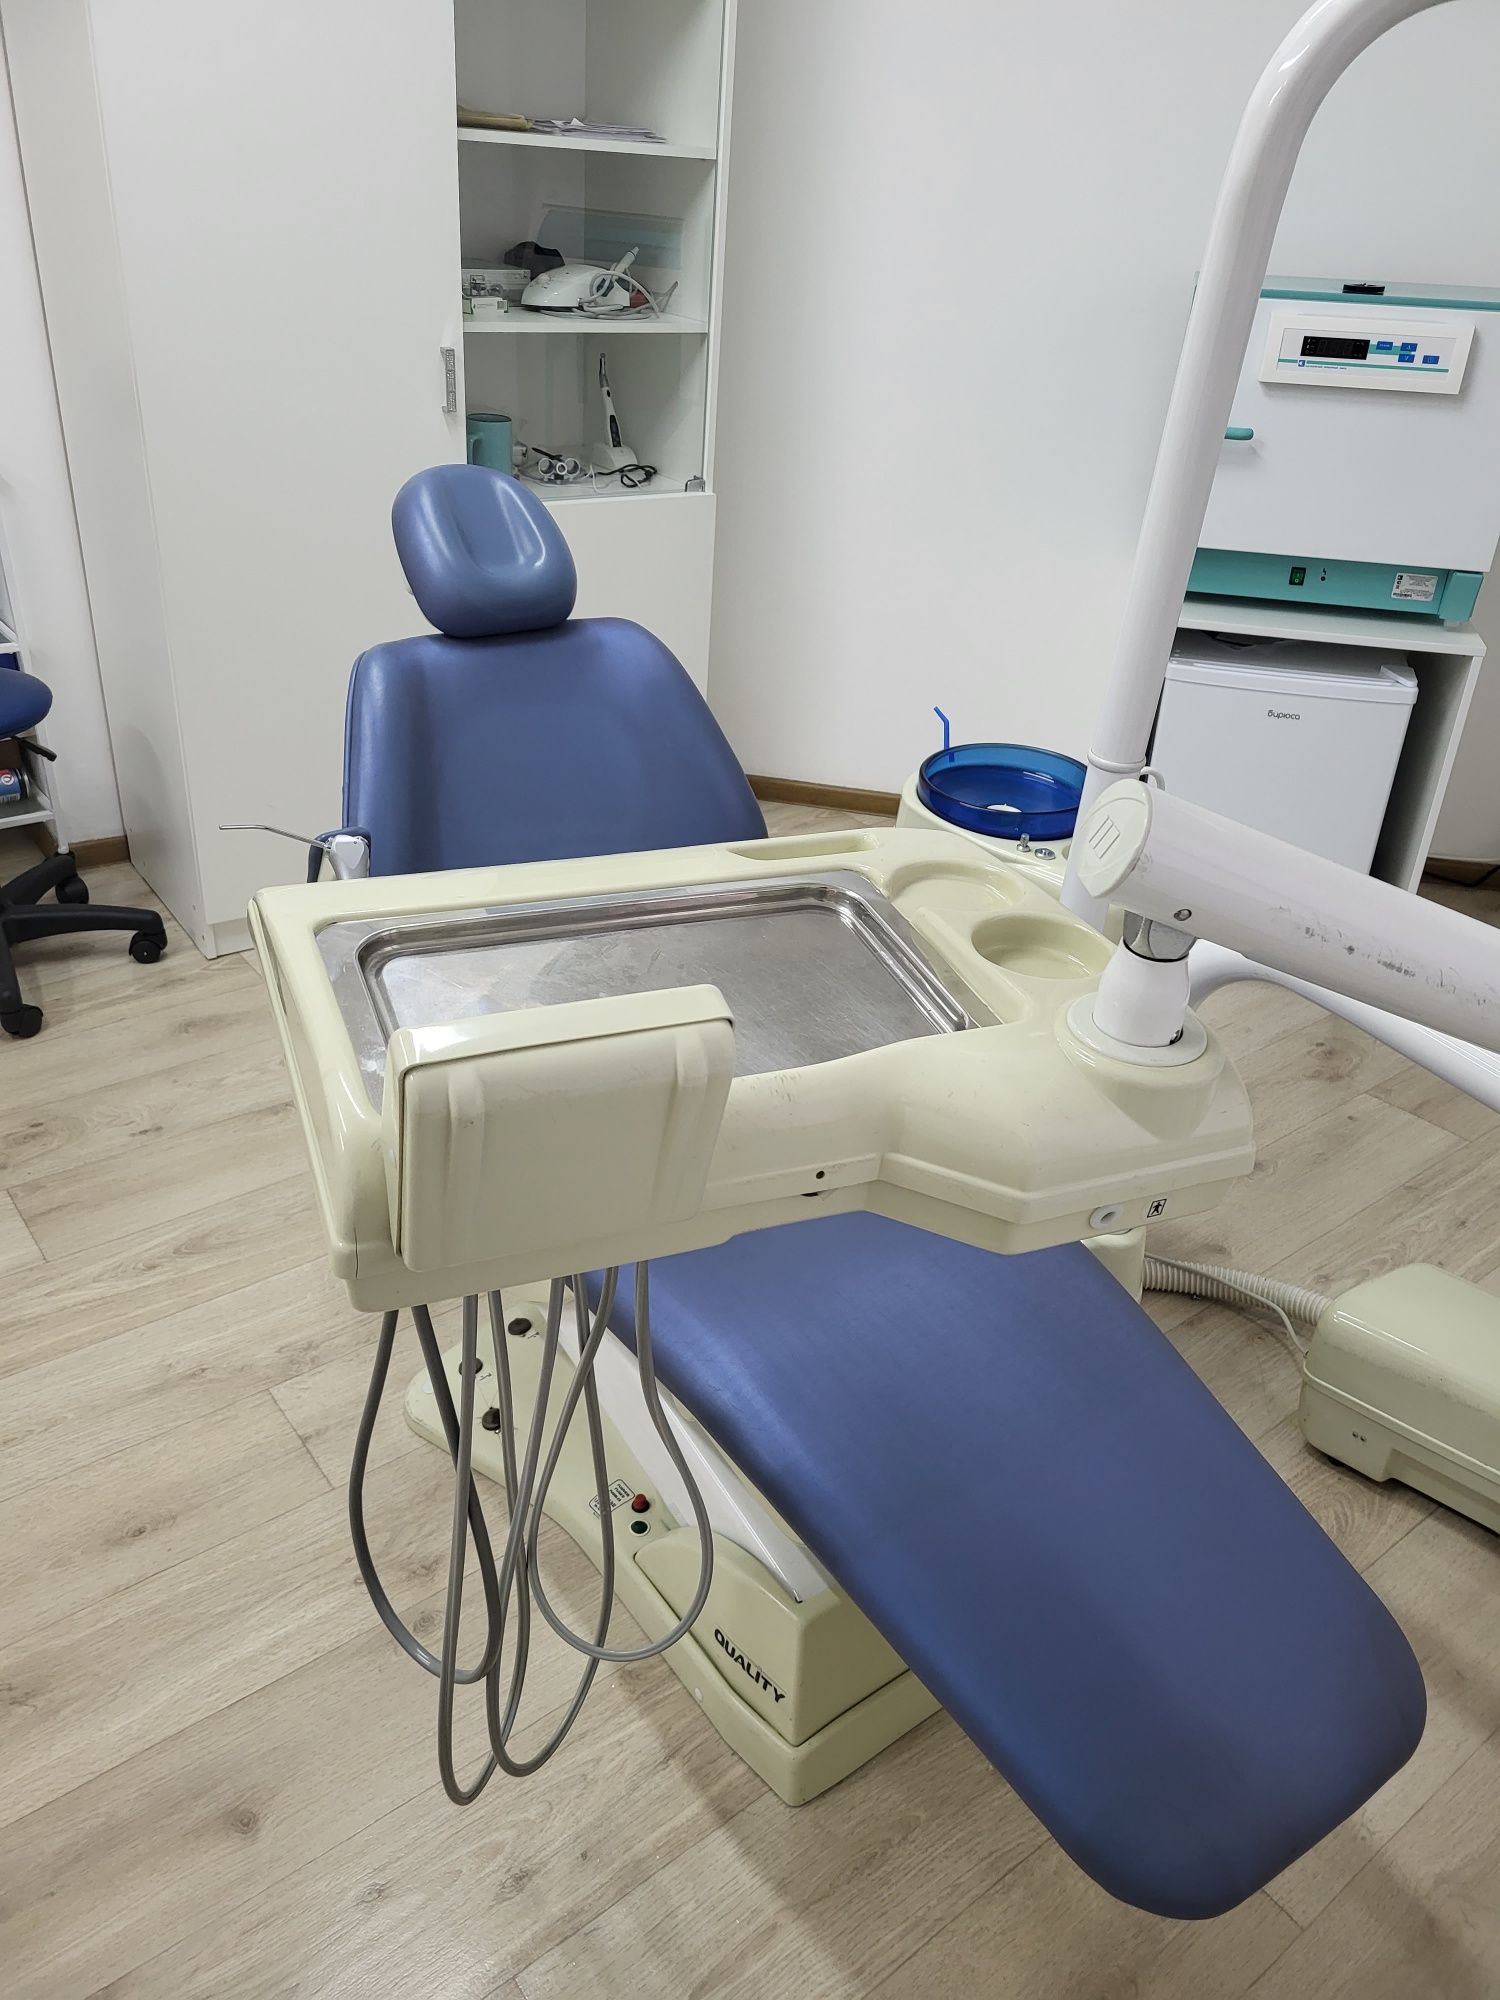 Продам стоматологическую установку производства Бразилия "Olsen"